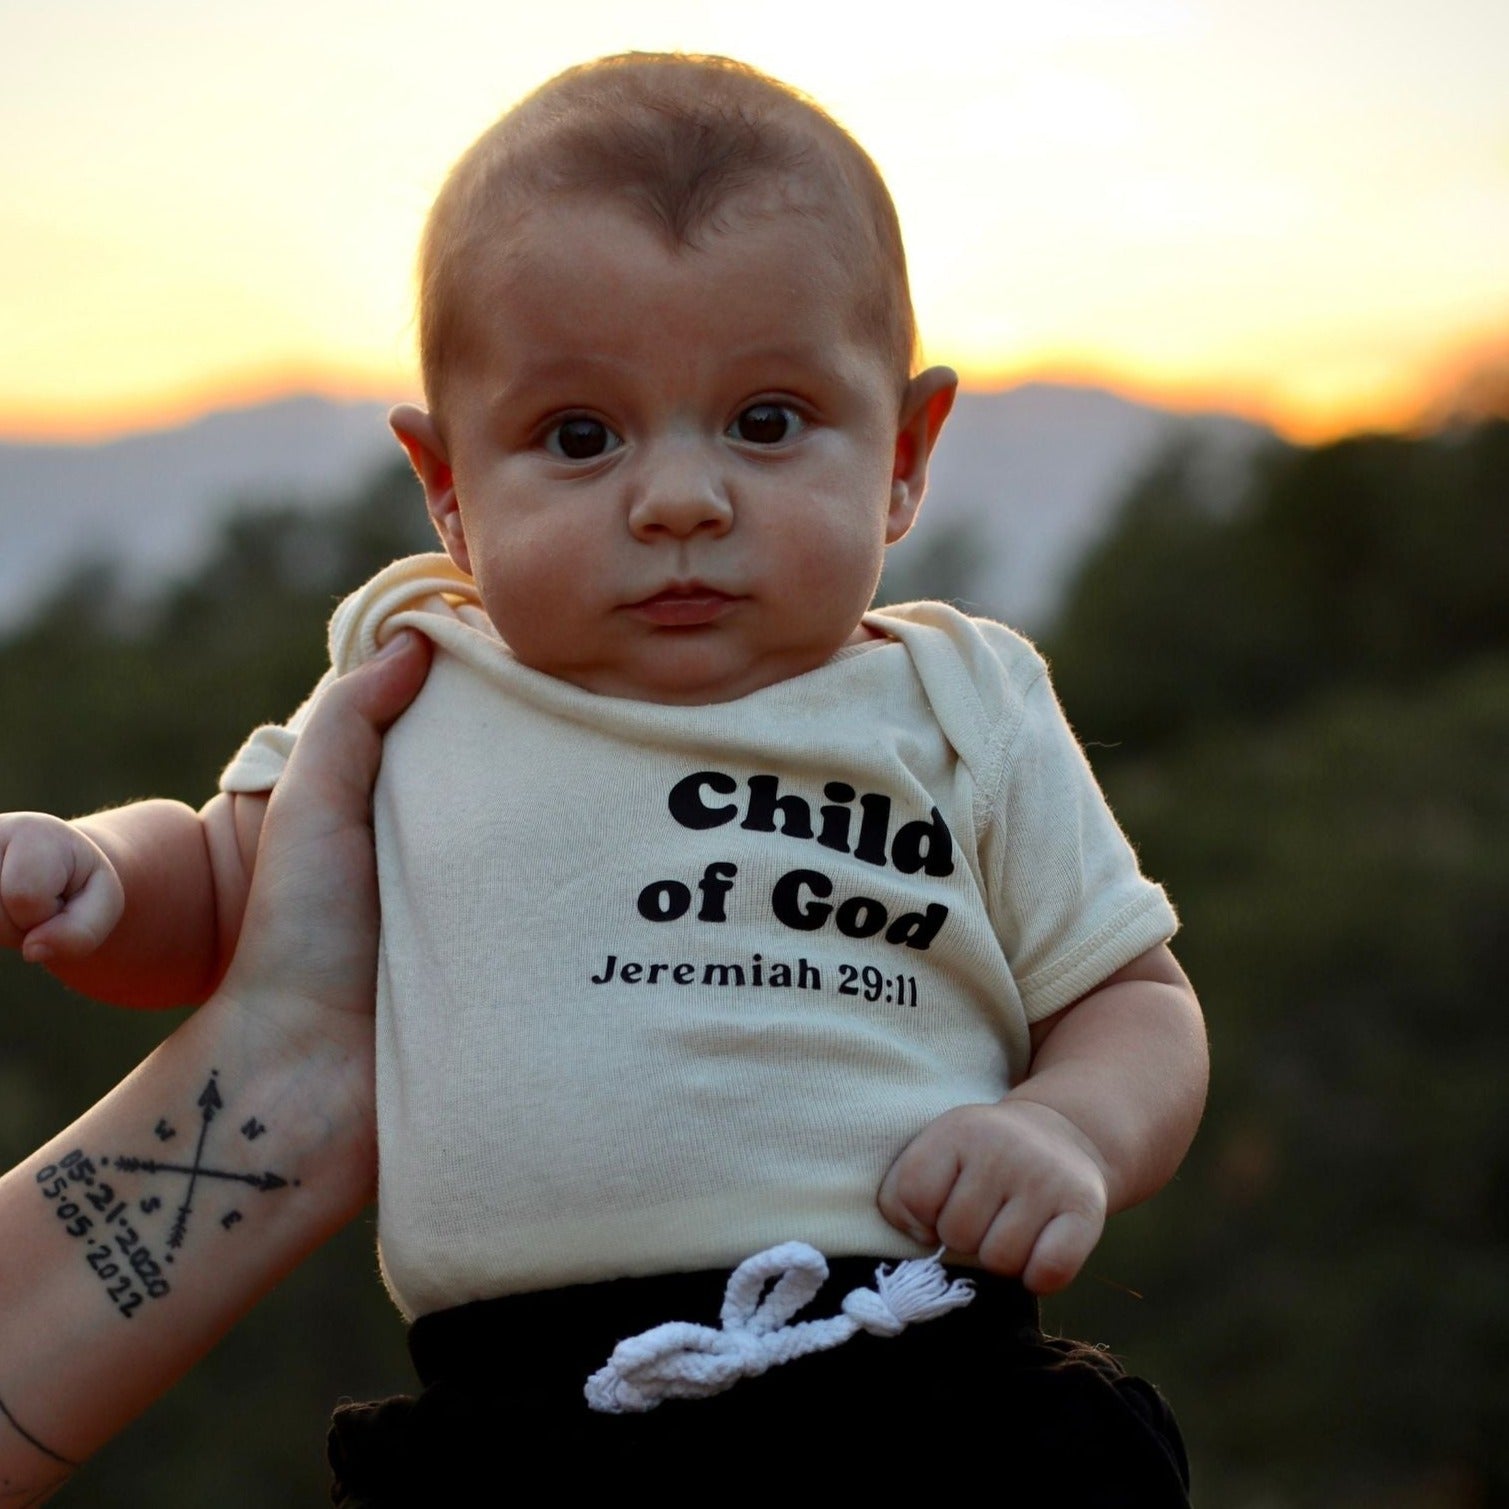 Child of God Baby